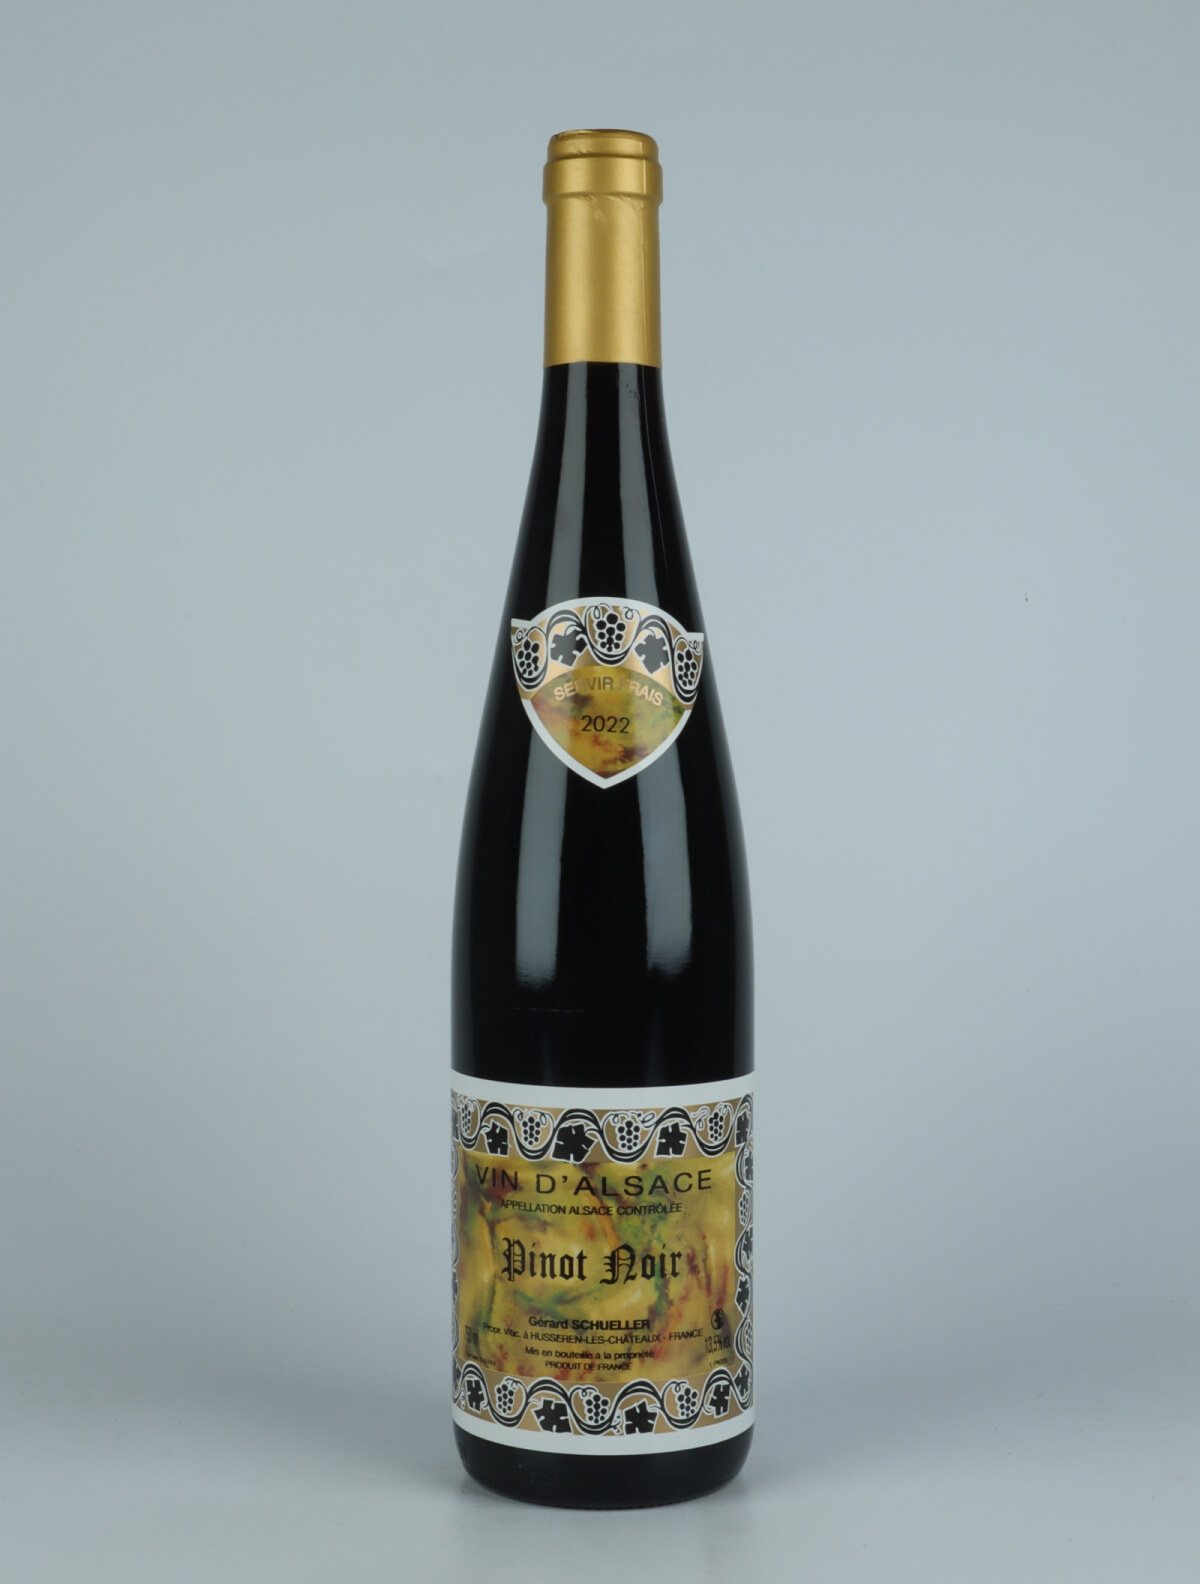 A bottle 2022 Pinot Noir Red wine from Gérard Schueller, Alsace in France